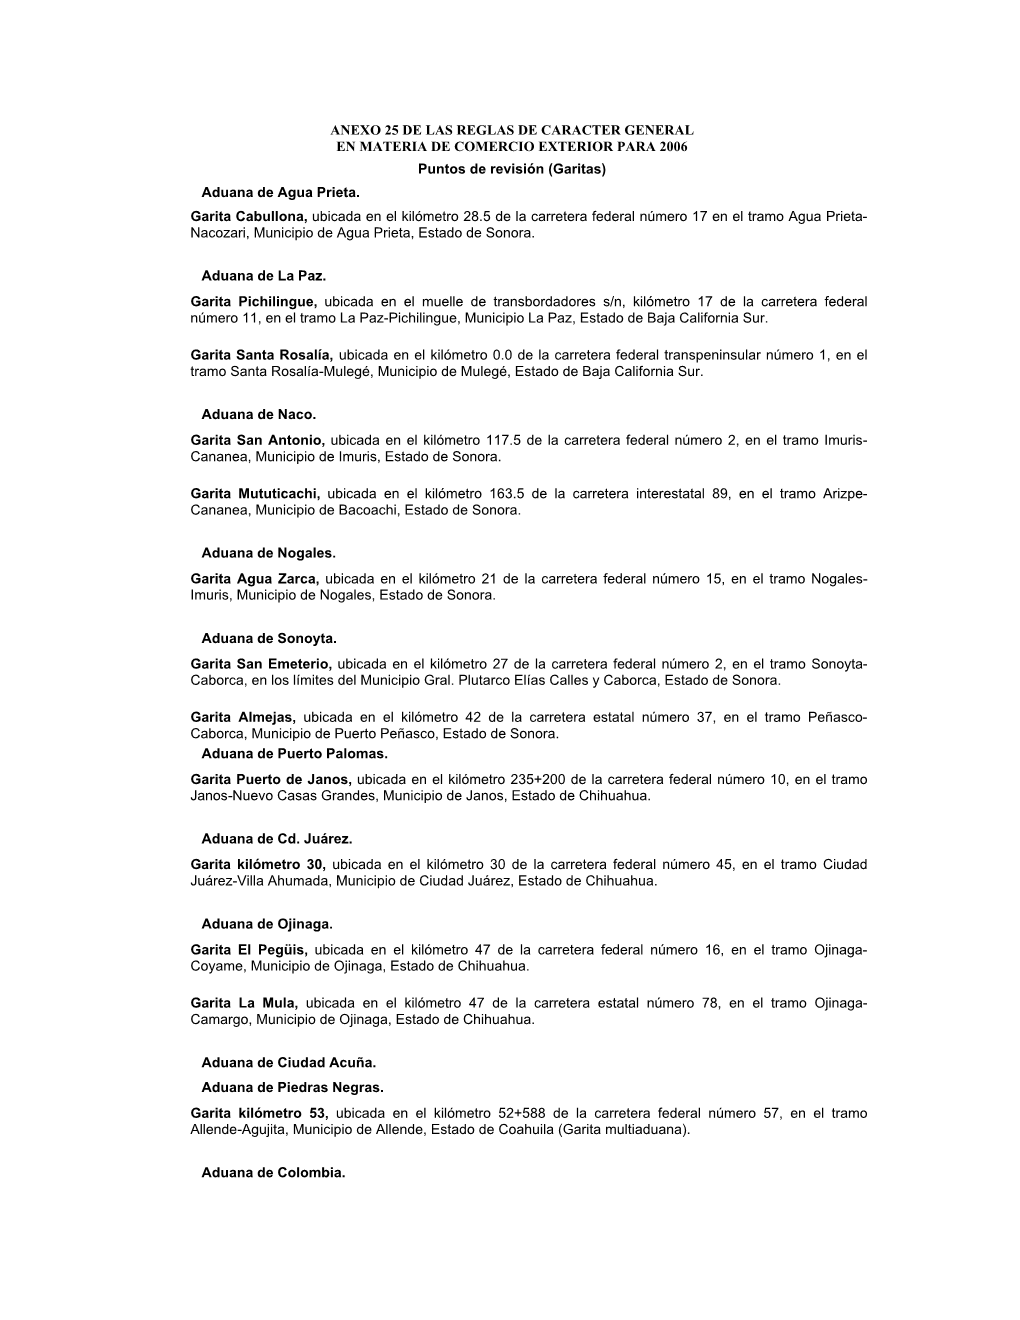 ANEXO 25 DE LAS REGLAS DE CARACTER GENERAL EN MATERIA DE COMERCIO EXTERIOR PARA 2006 Puntos De Revisión (Garitas) Aduana De Agua Prieta